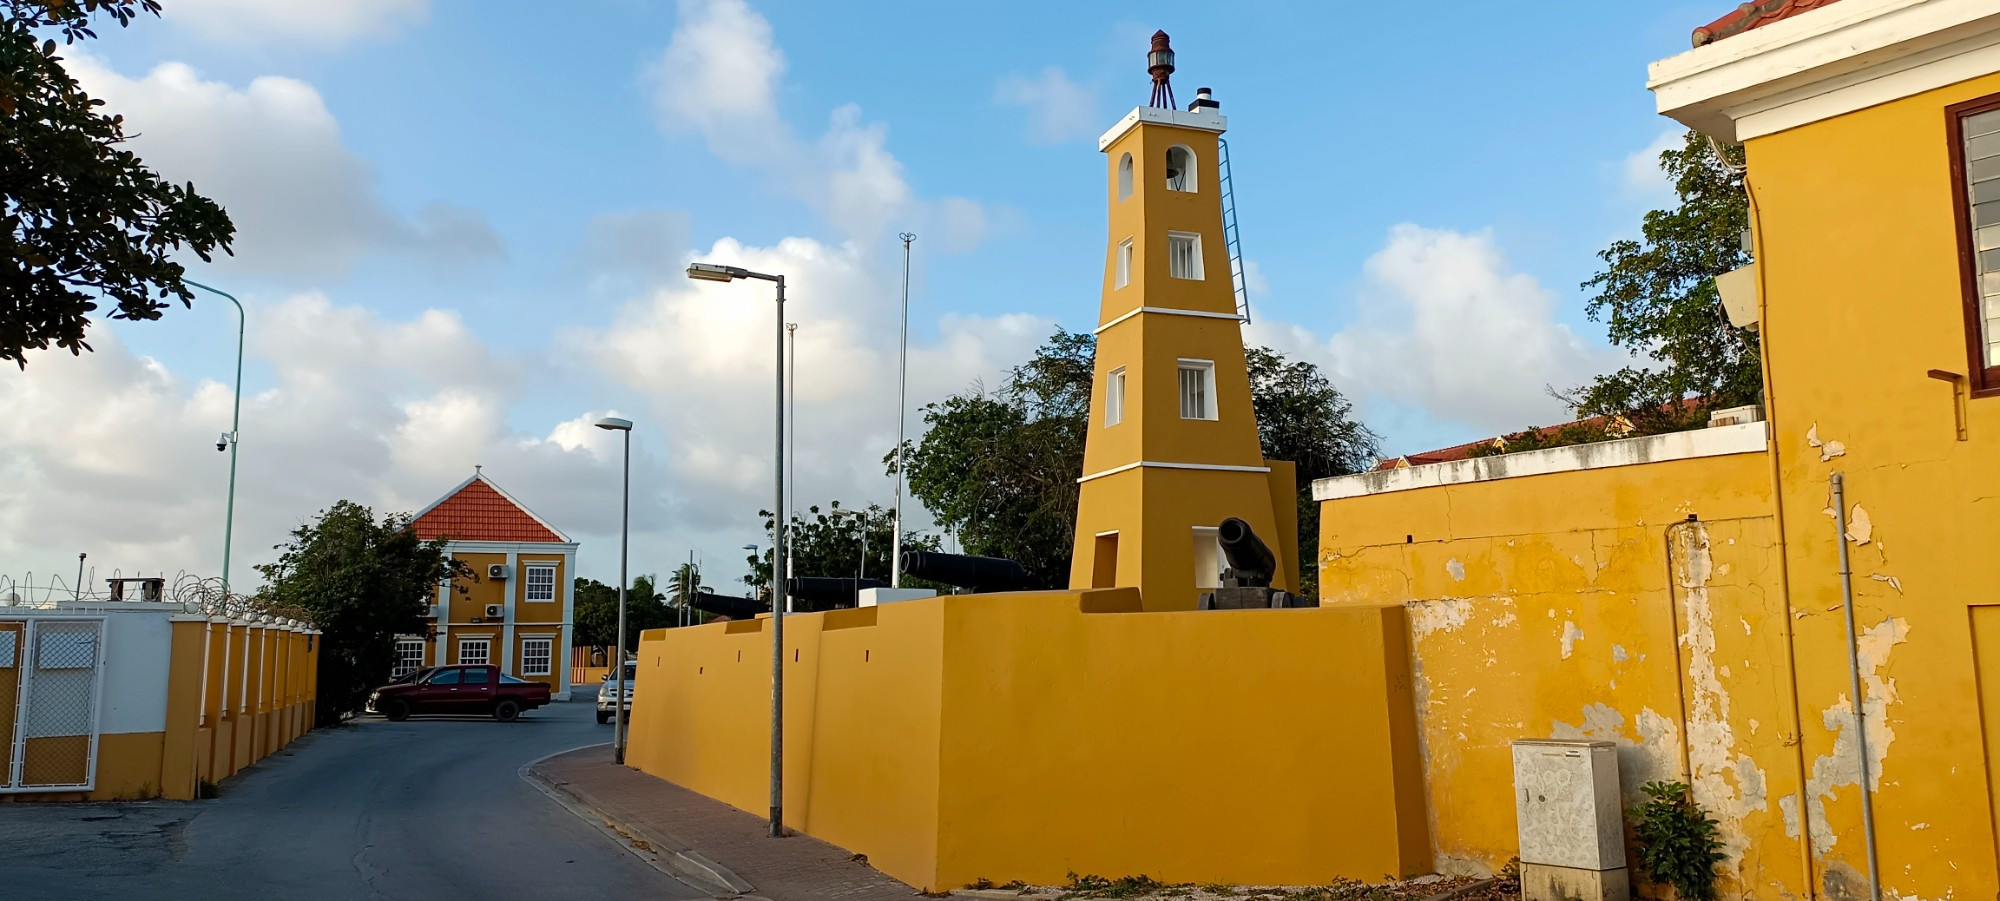 Fort Orange, Netherlands Antilles